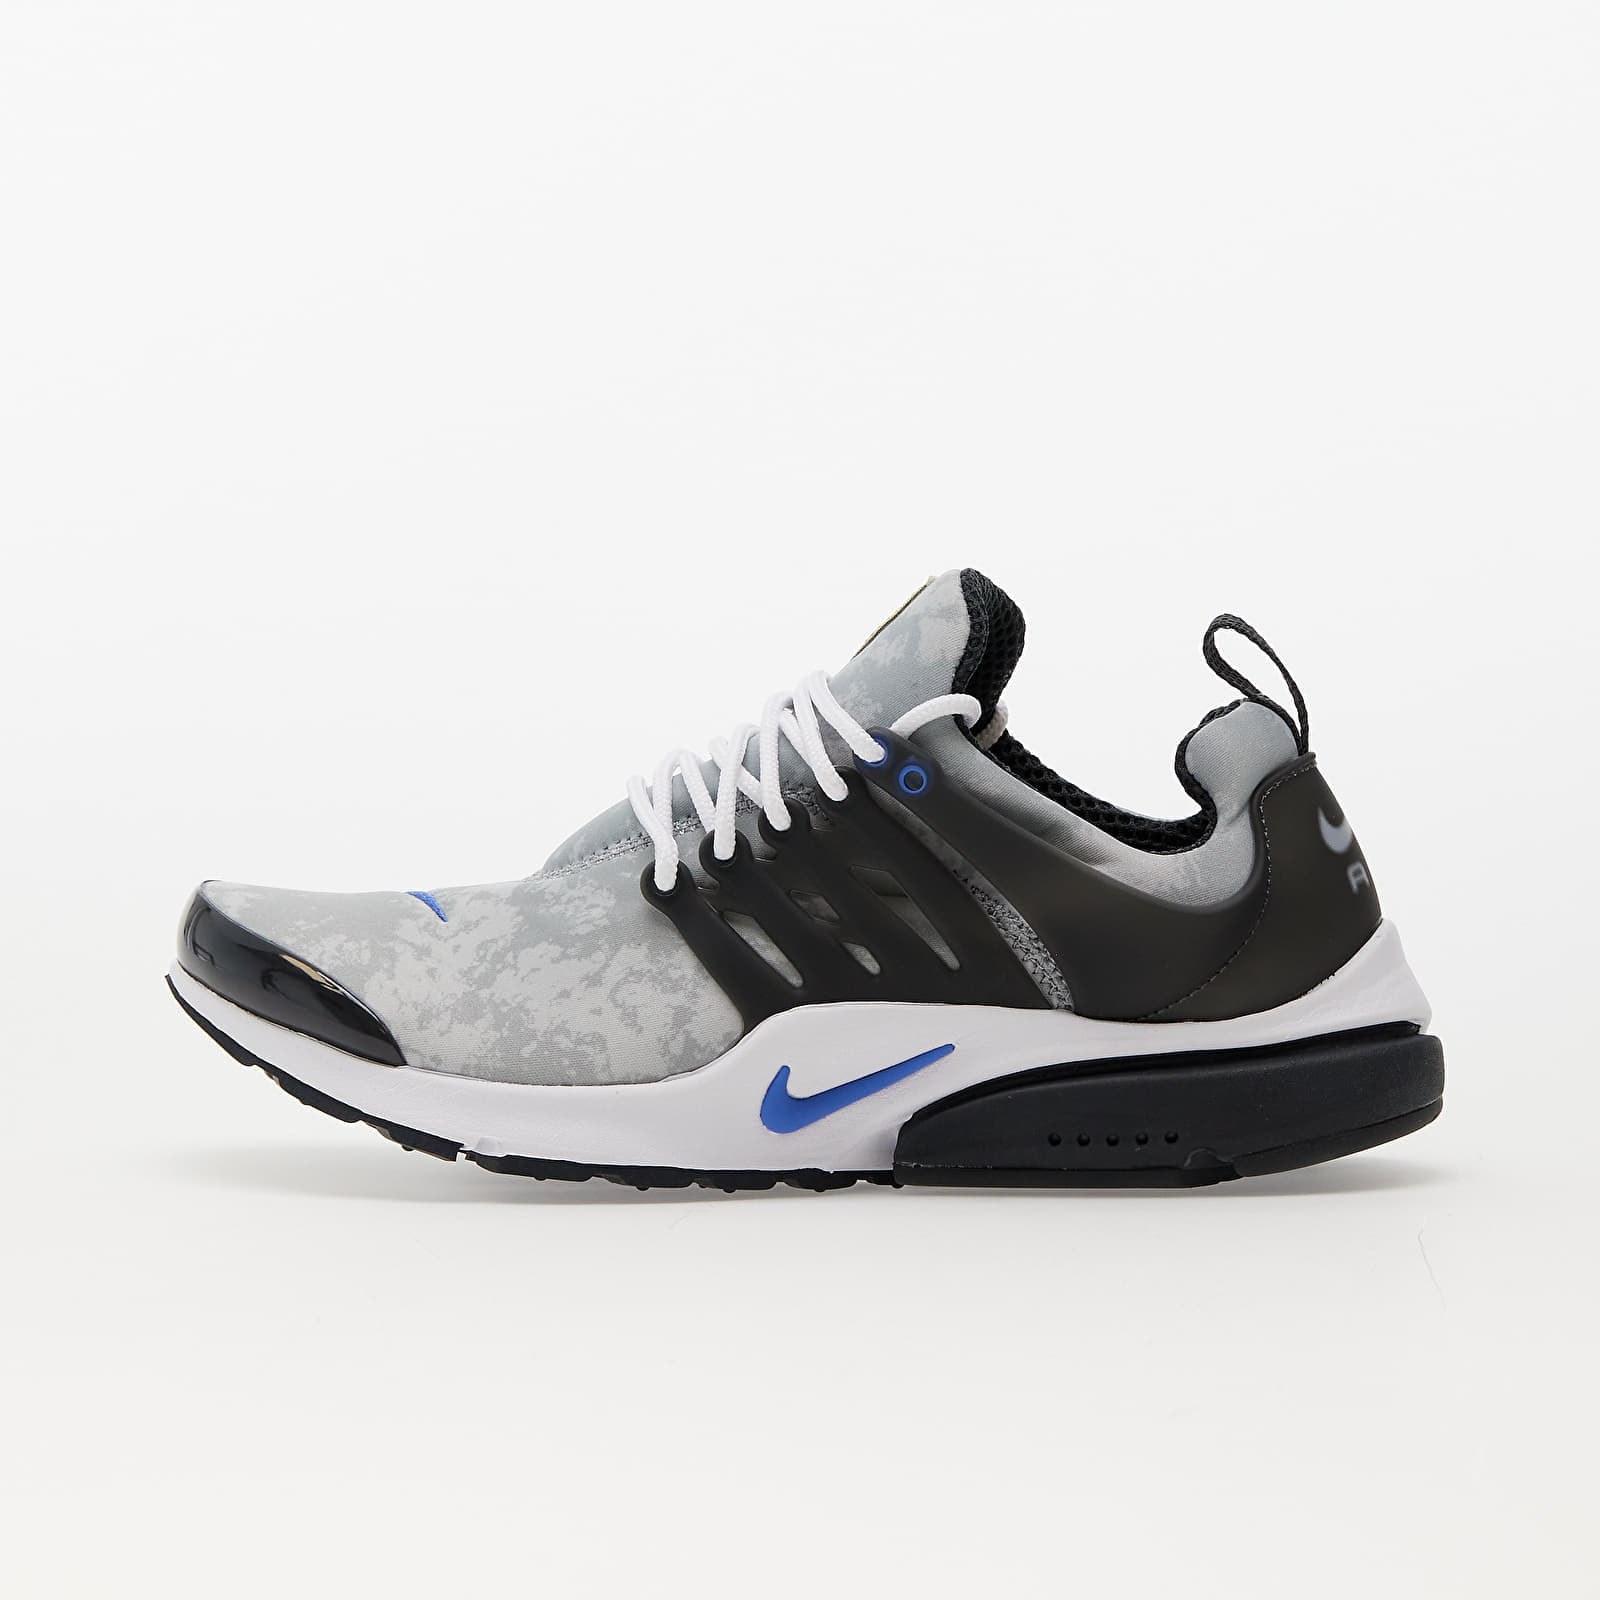 Turnschuhe und Schuhe für Männer Nike Air Presto Premium LT Smoke Grey/ Anthracite